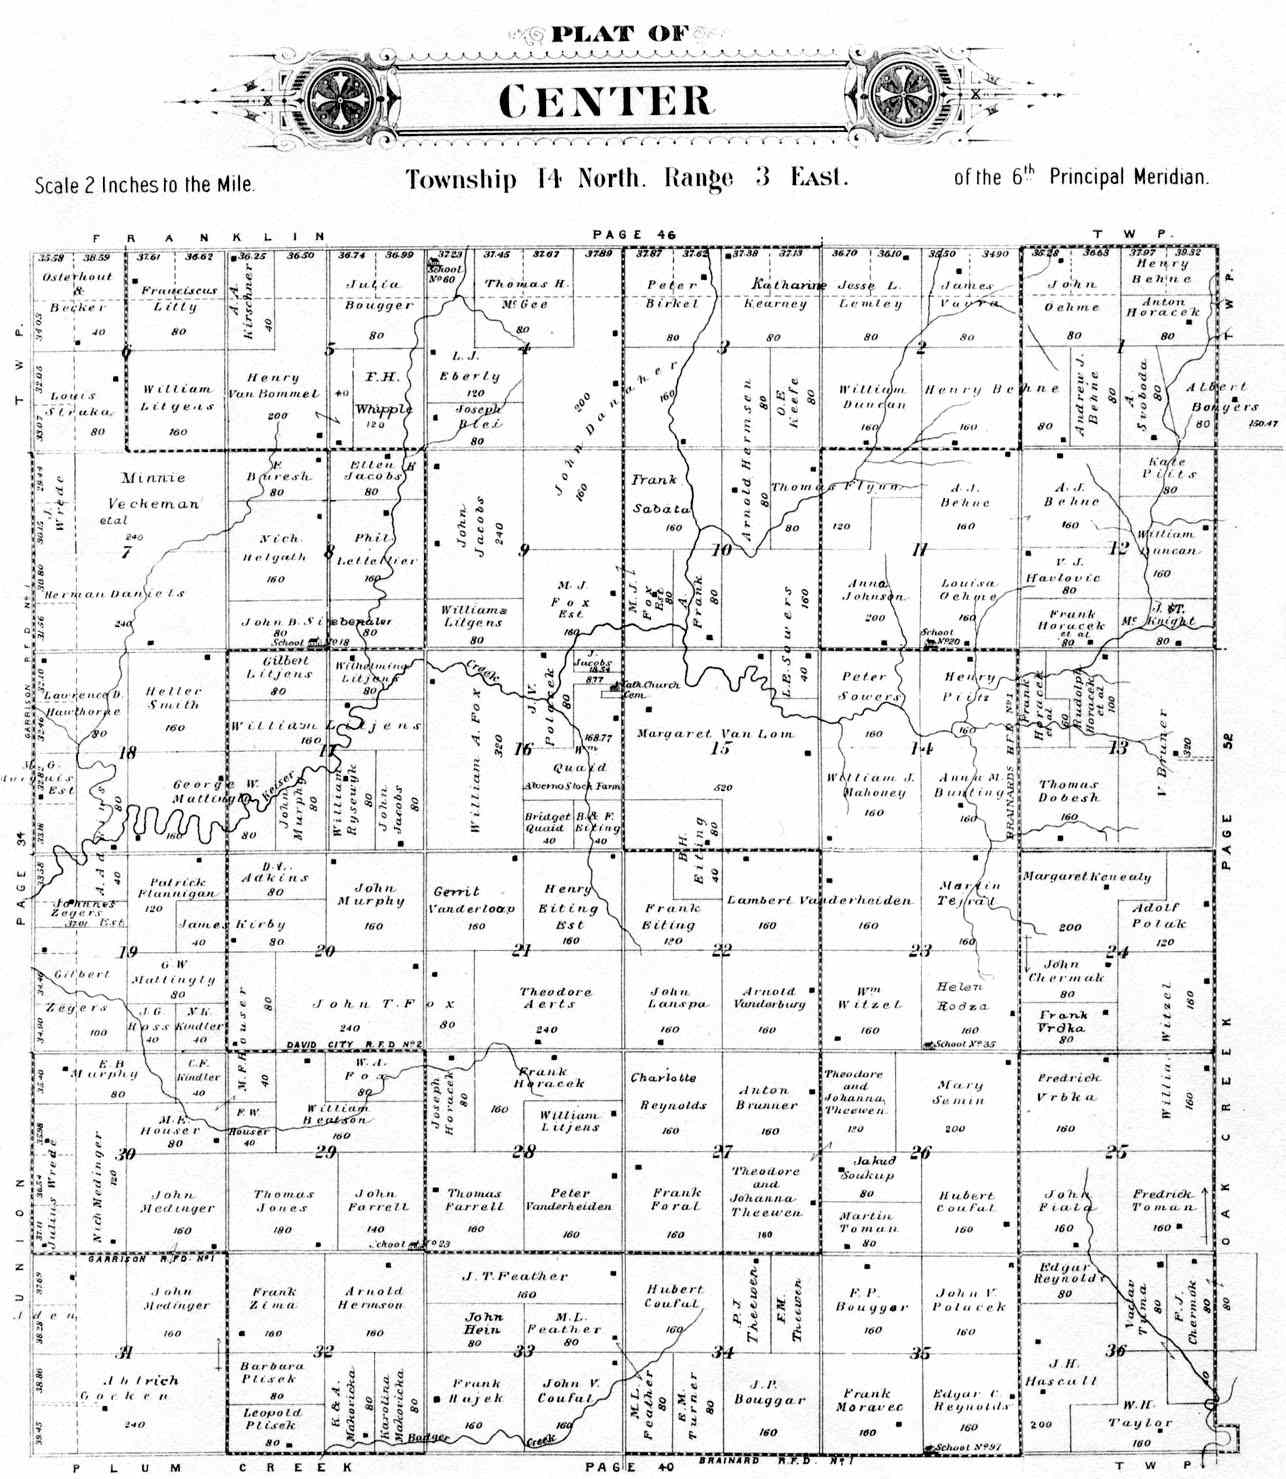 Center Township Butler County Nebraska Plat Map for 1906